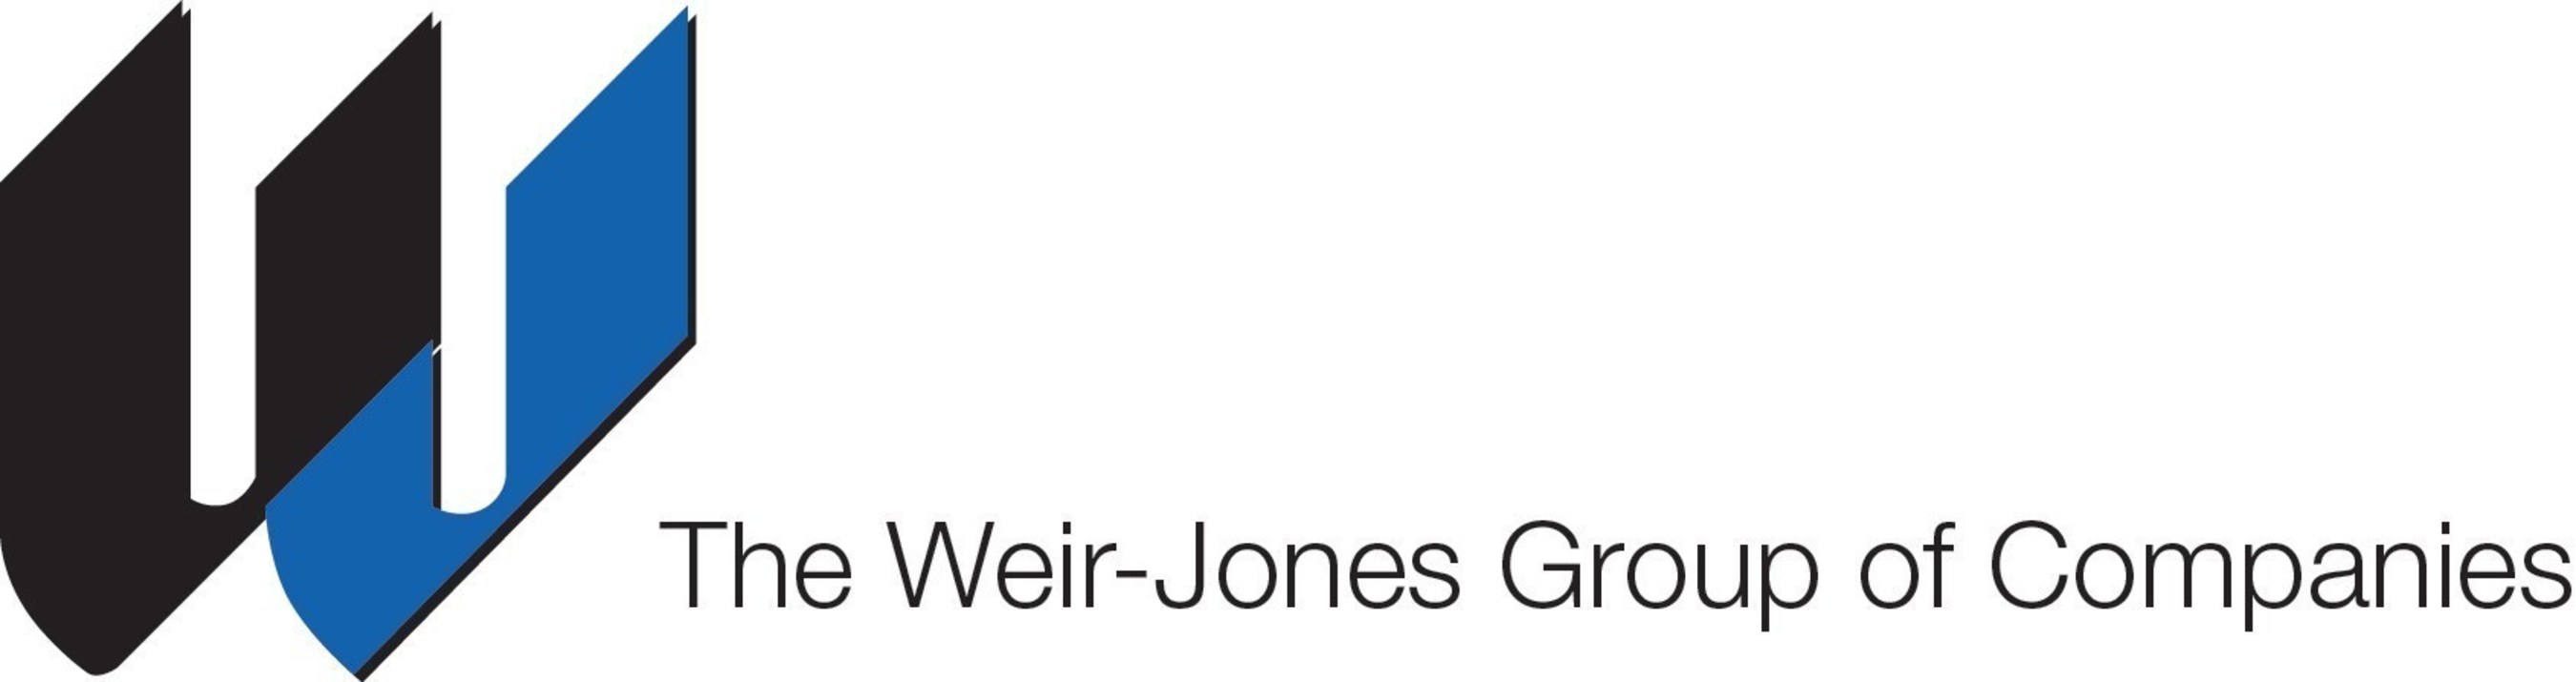 Weir-Jones